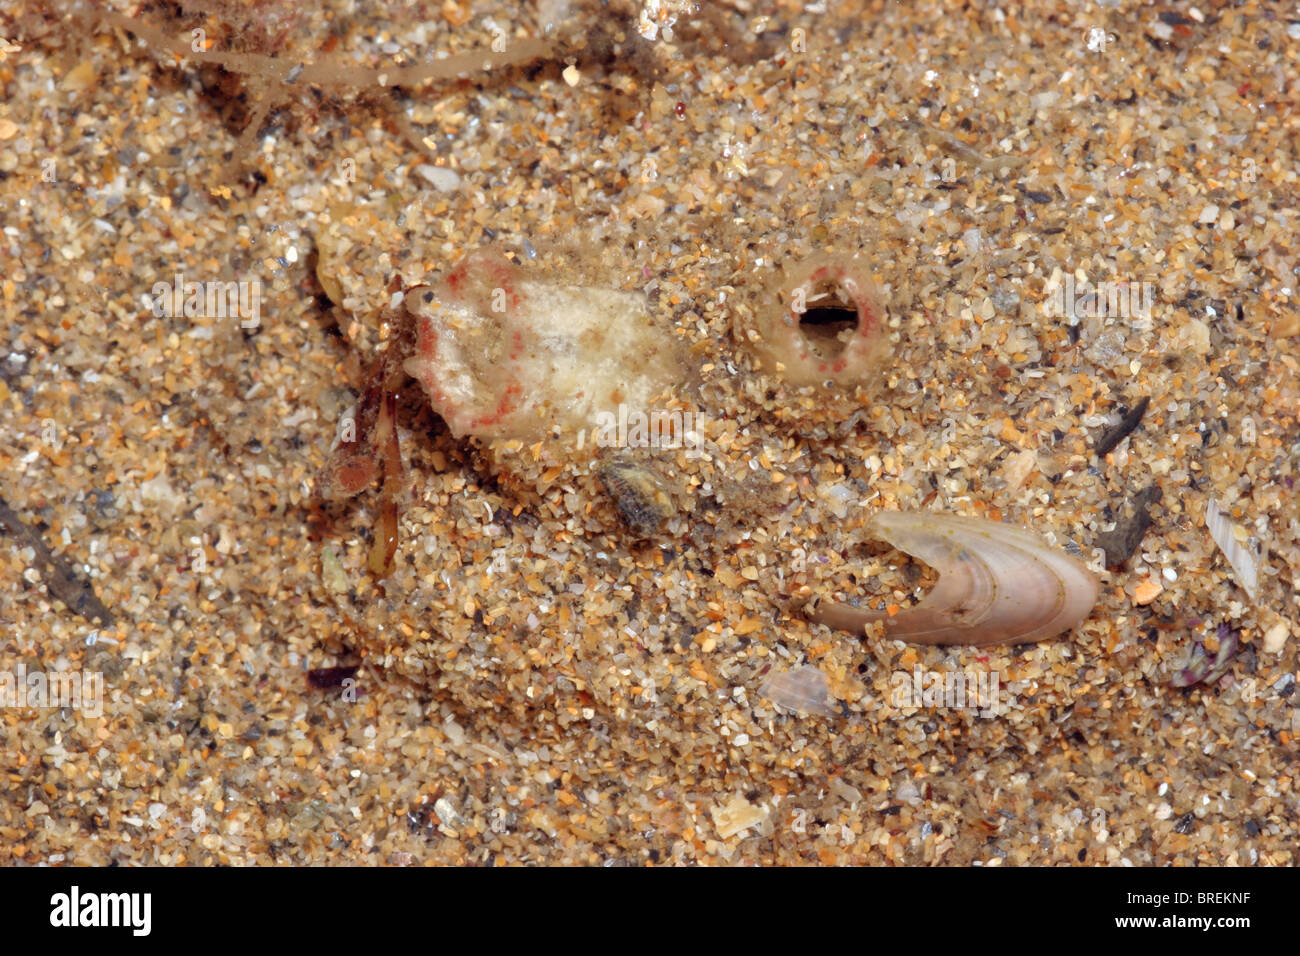 A sea squirt (Molgula oculata : Styelidae) in a sandy pool, UK. Stock Photo